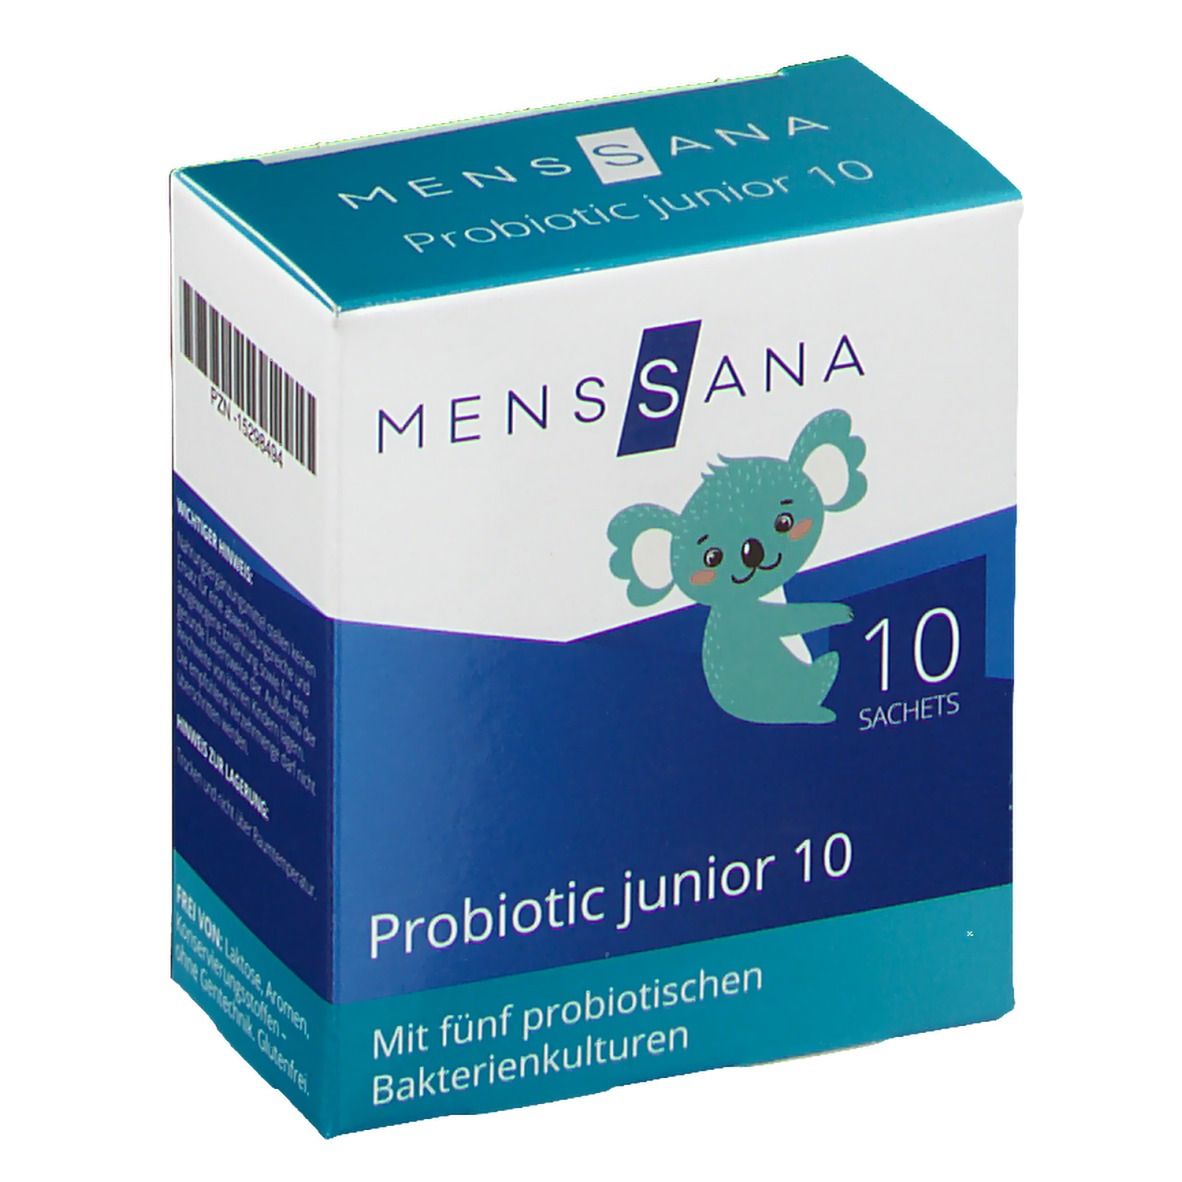 MensSana Probiotic junior